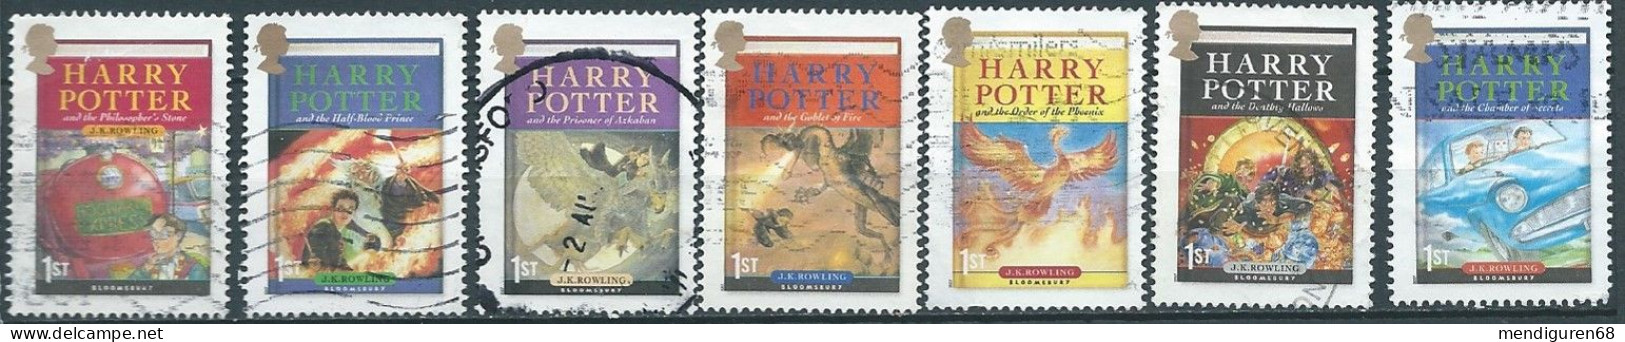 GROSSBRITANNIEN GRANDE BRETAGNE GB 2007 HARRY POTTER SET 7V USED SG 2750-56 SC 2479-85A MI 2535-41 YT 2904-2910 - Used Stamps